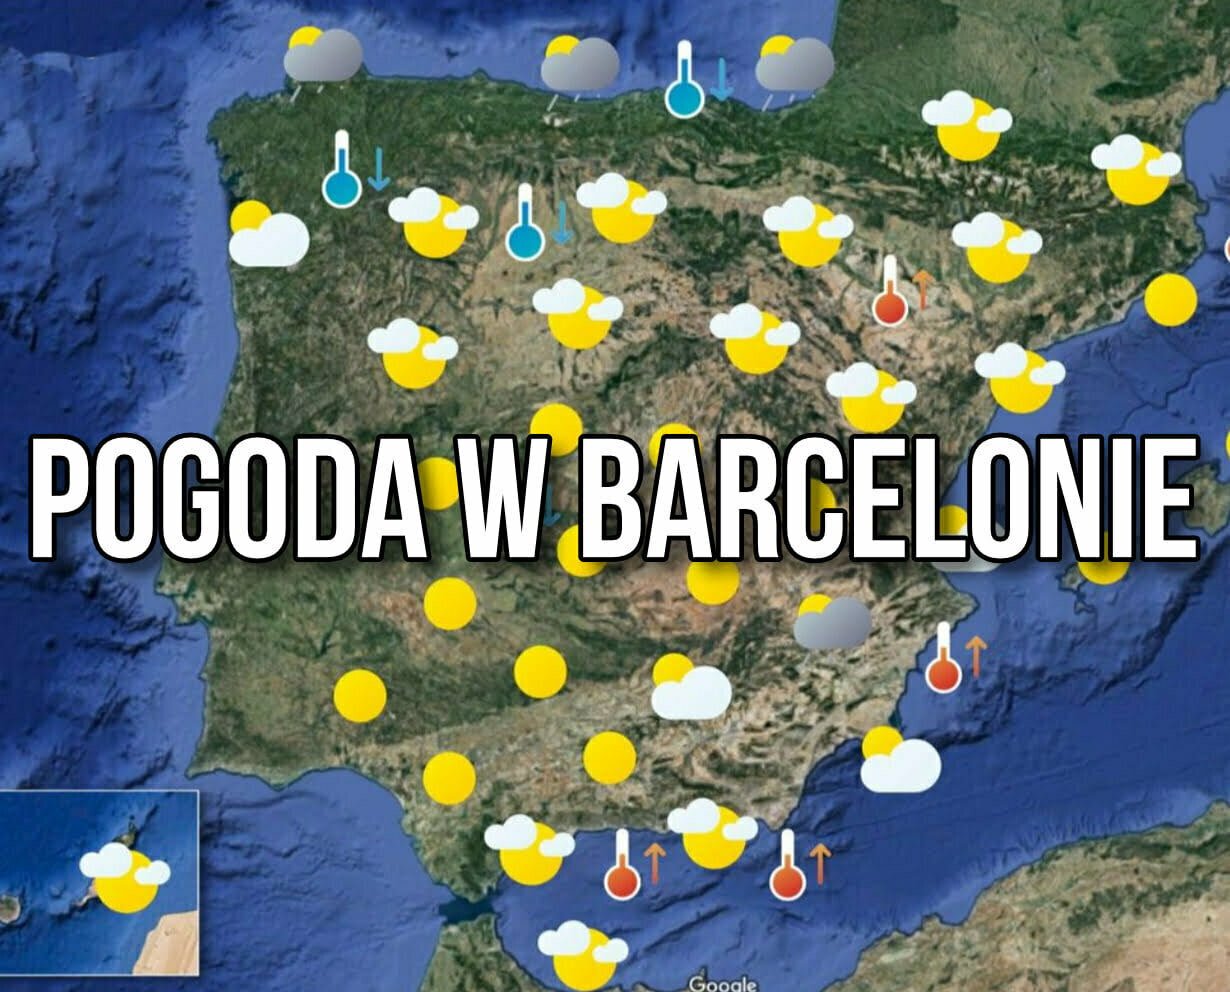 barcelona-pogoda-roczna-czyli-jak-z-pogod-przez-te-12-miesi-cy